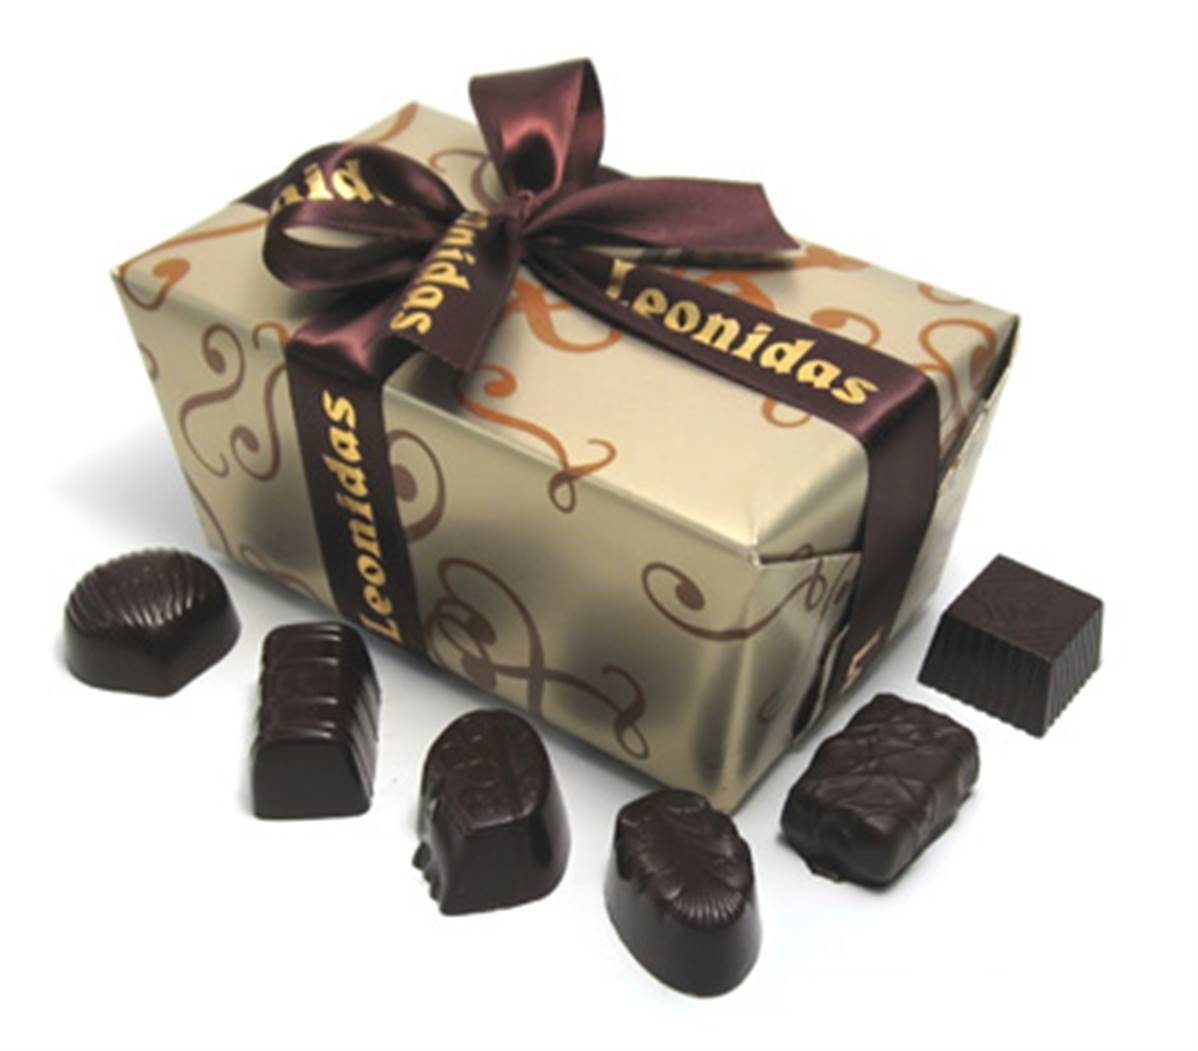 Ballotin 1 Kg, allégé en sucre - Maître chocolatier LEONIDAS CHOCO